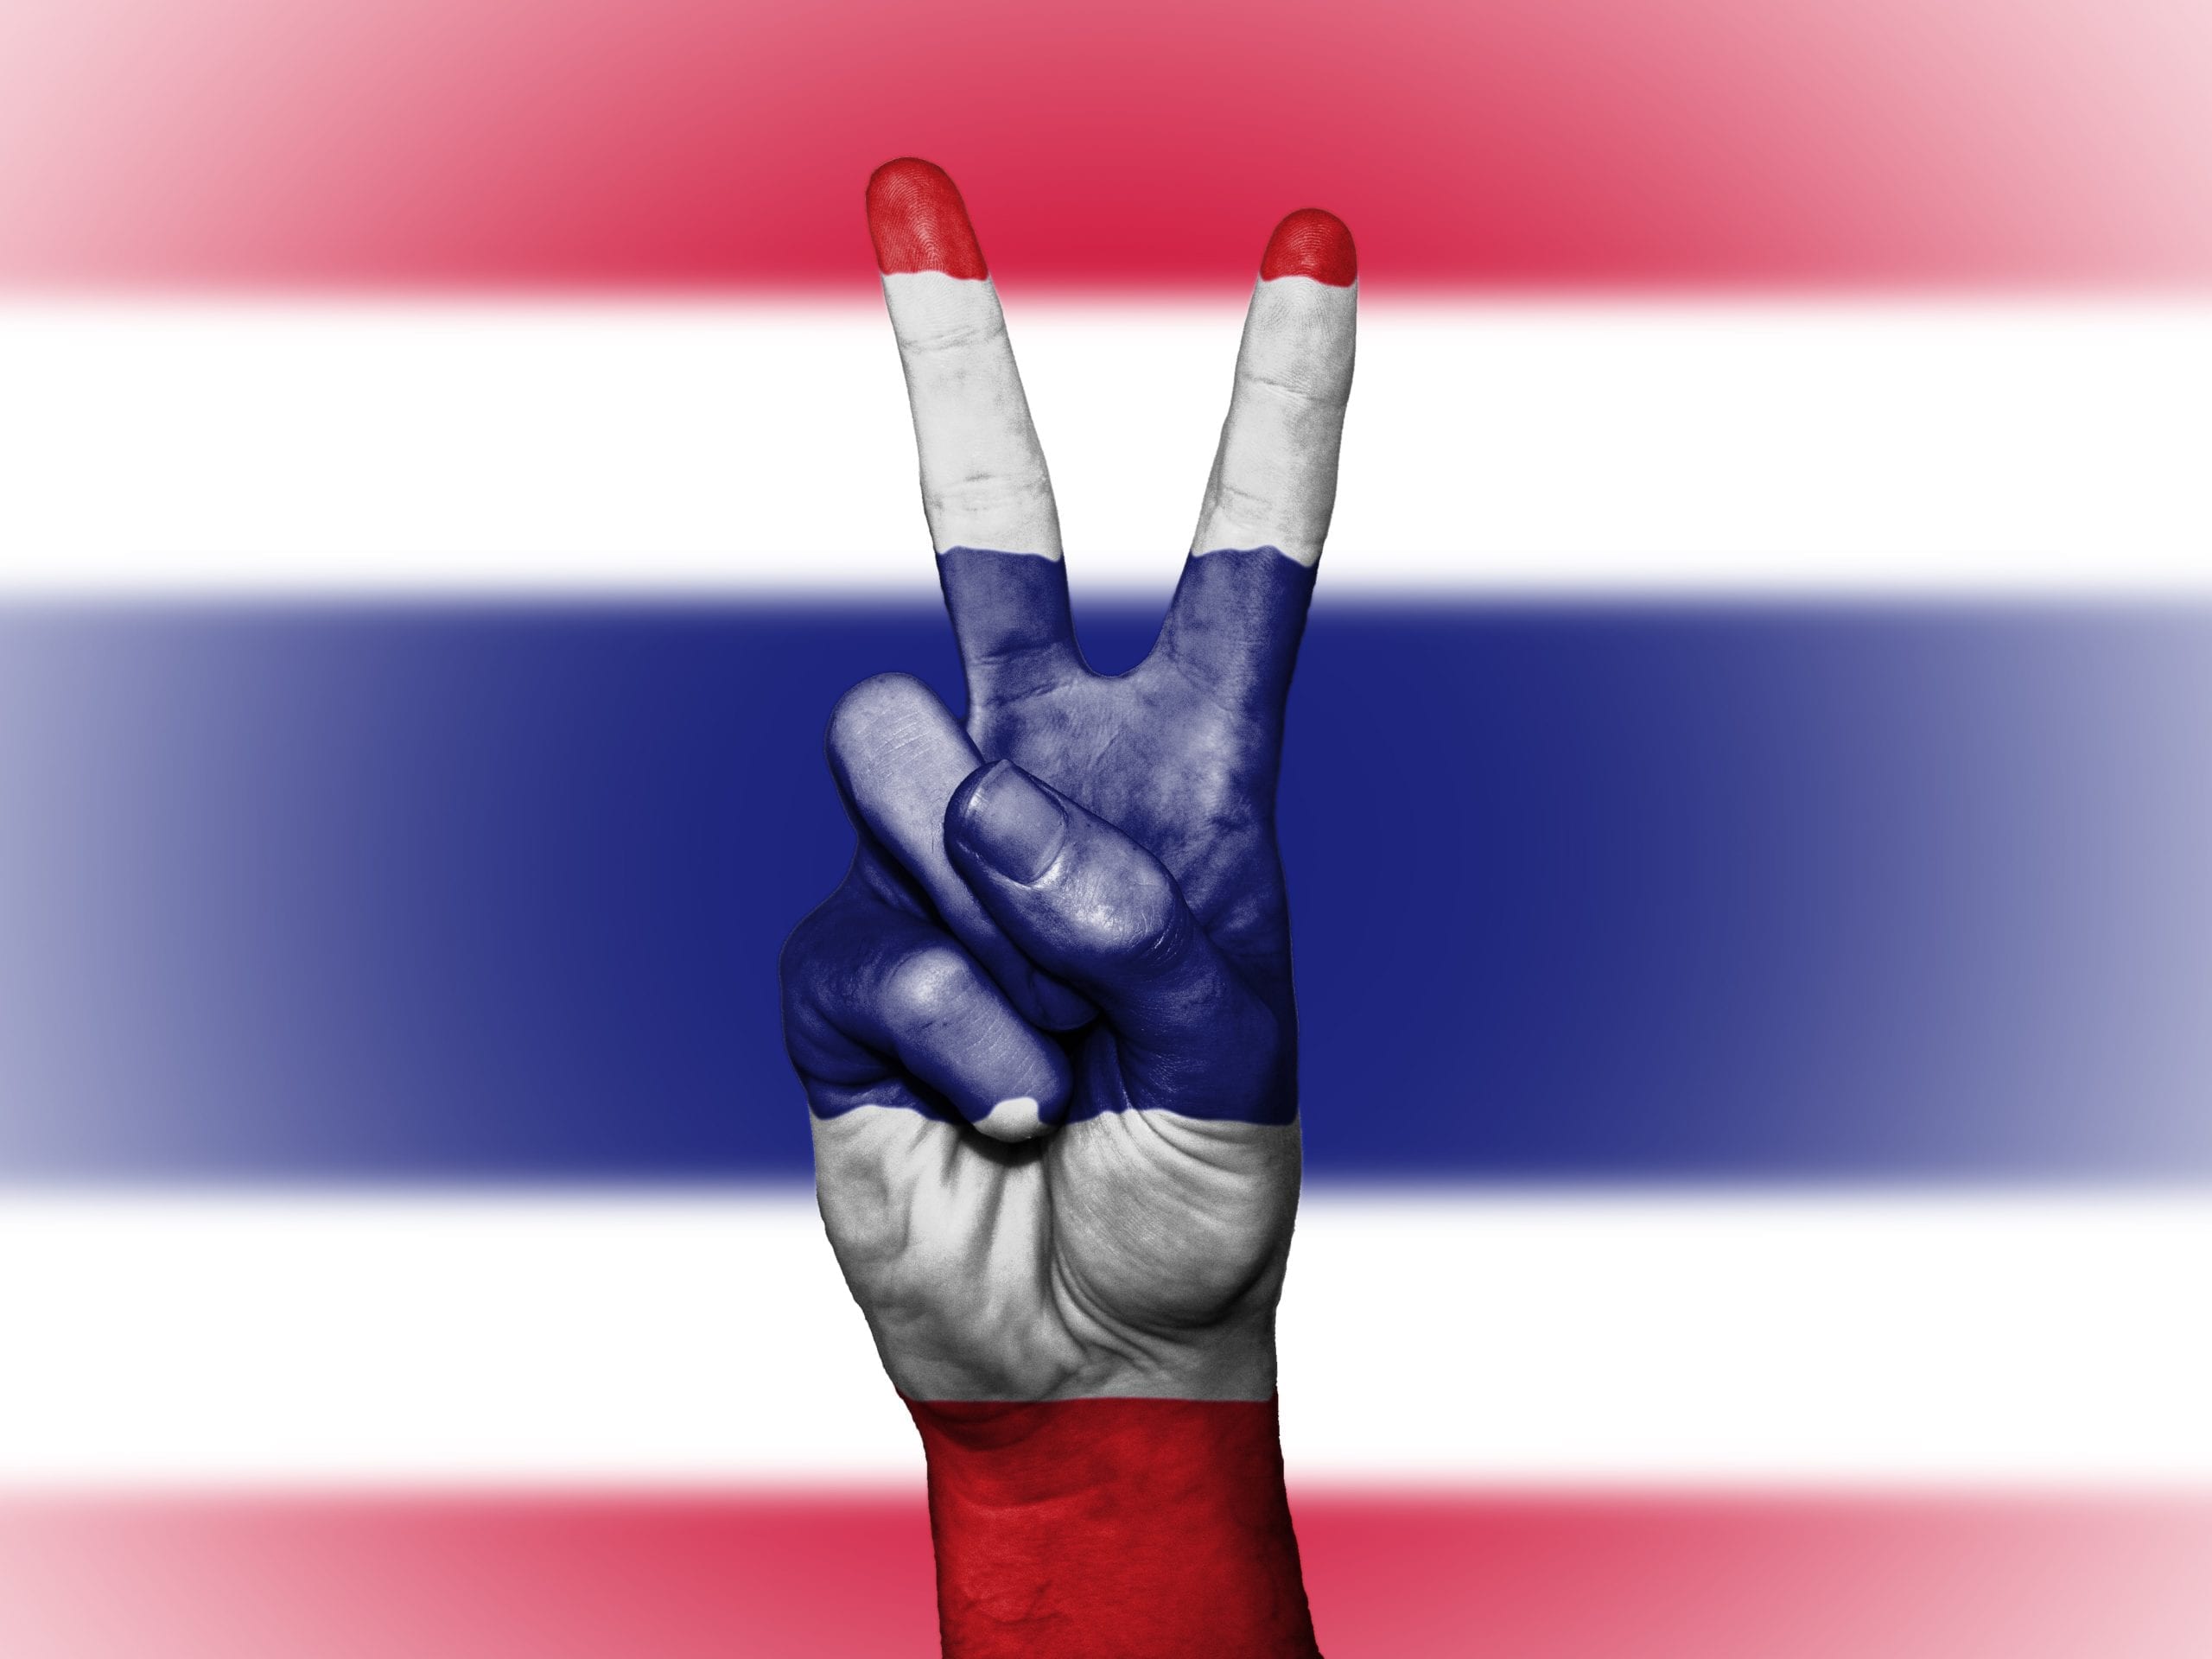 Proteste studentesche in Thailandia: il risveglio del “gigante dormiente”